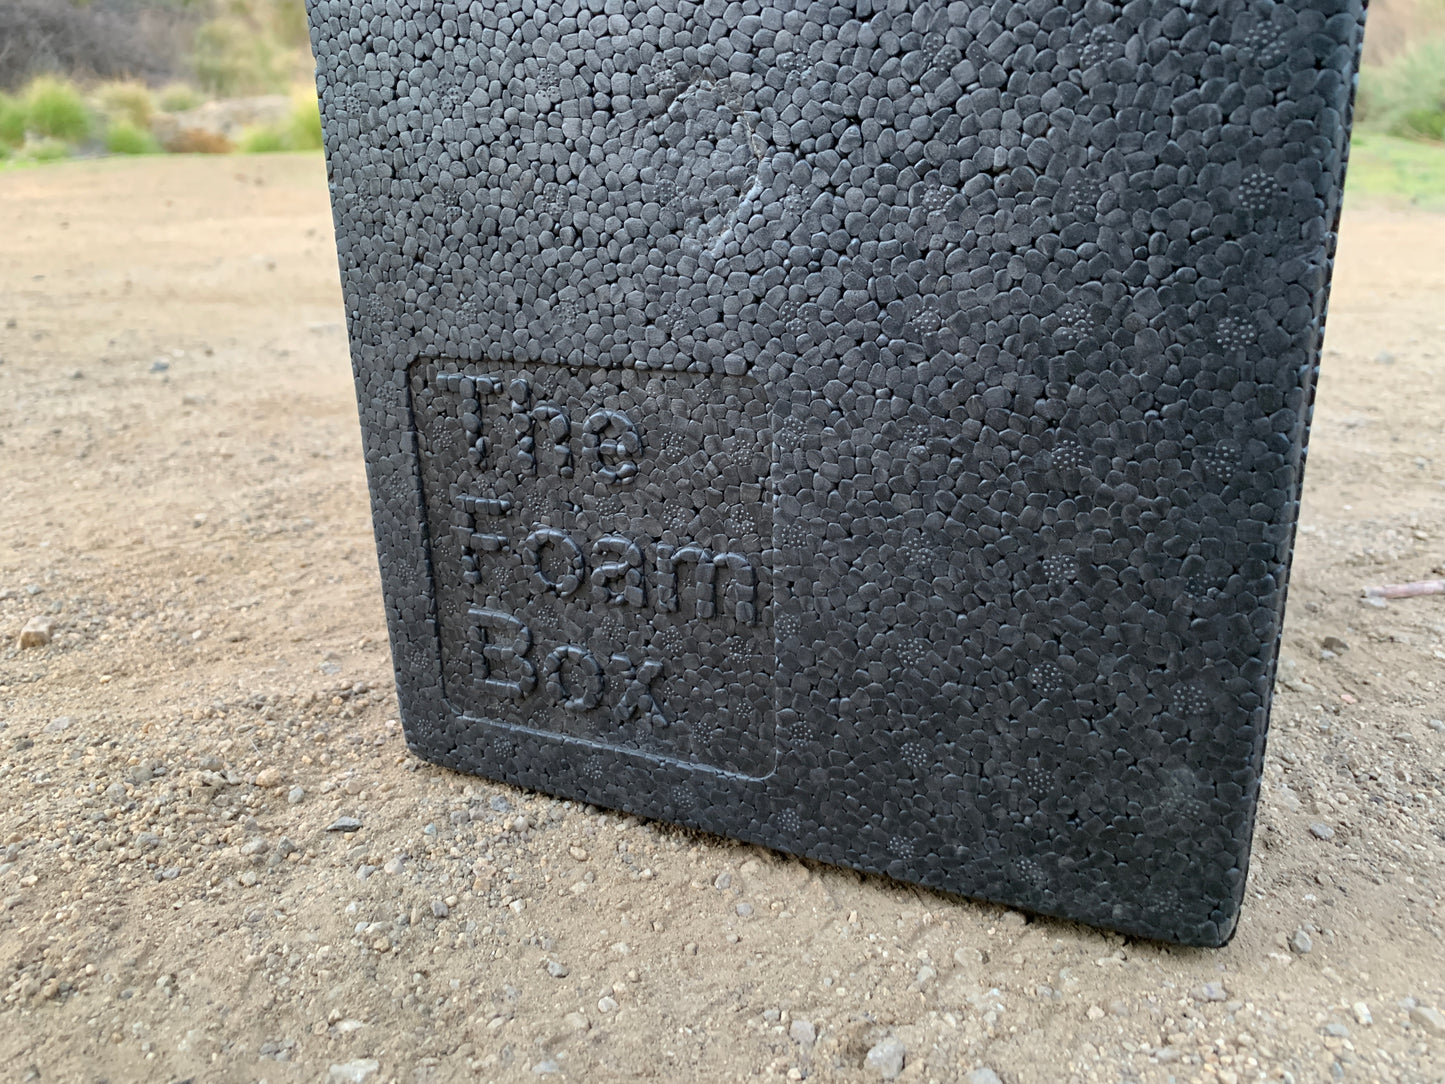 The Foam Box